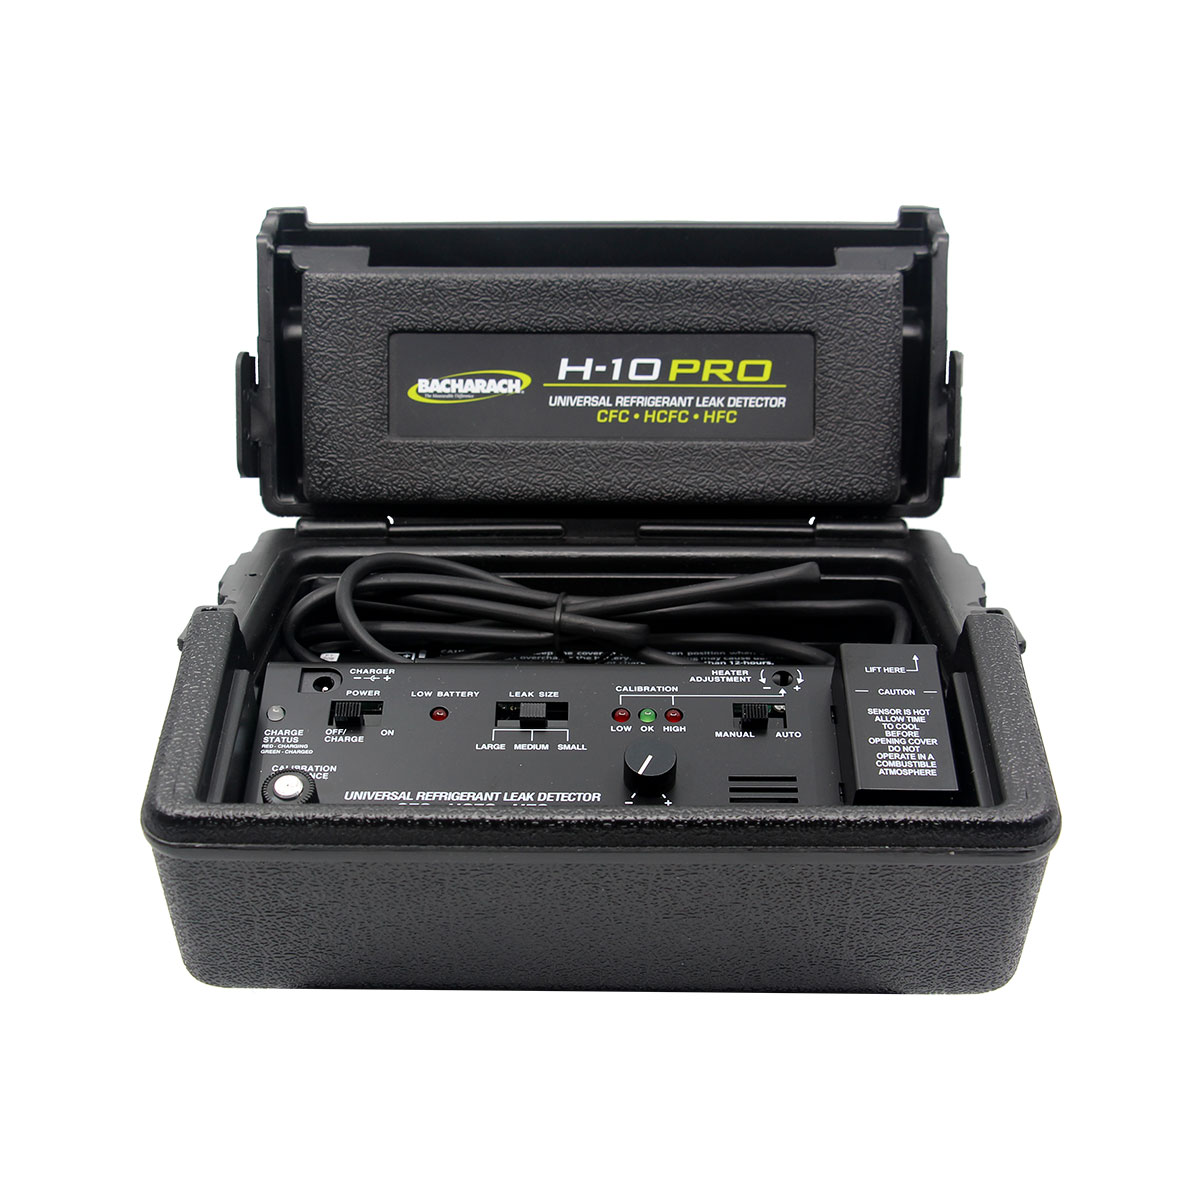 Detektor Kebocoran Refrigeran H-10 Pro Untuk Perawatan A / C.“loading=